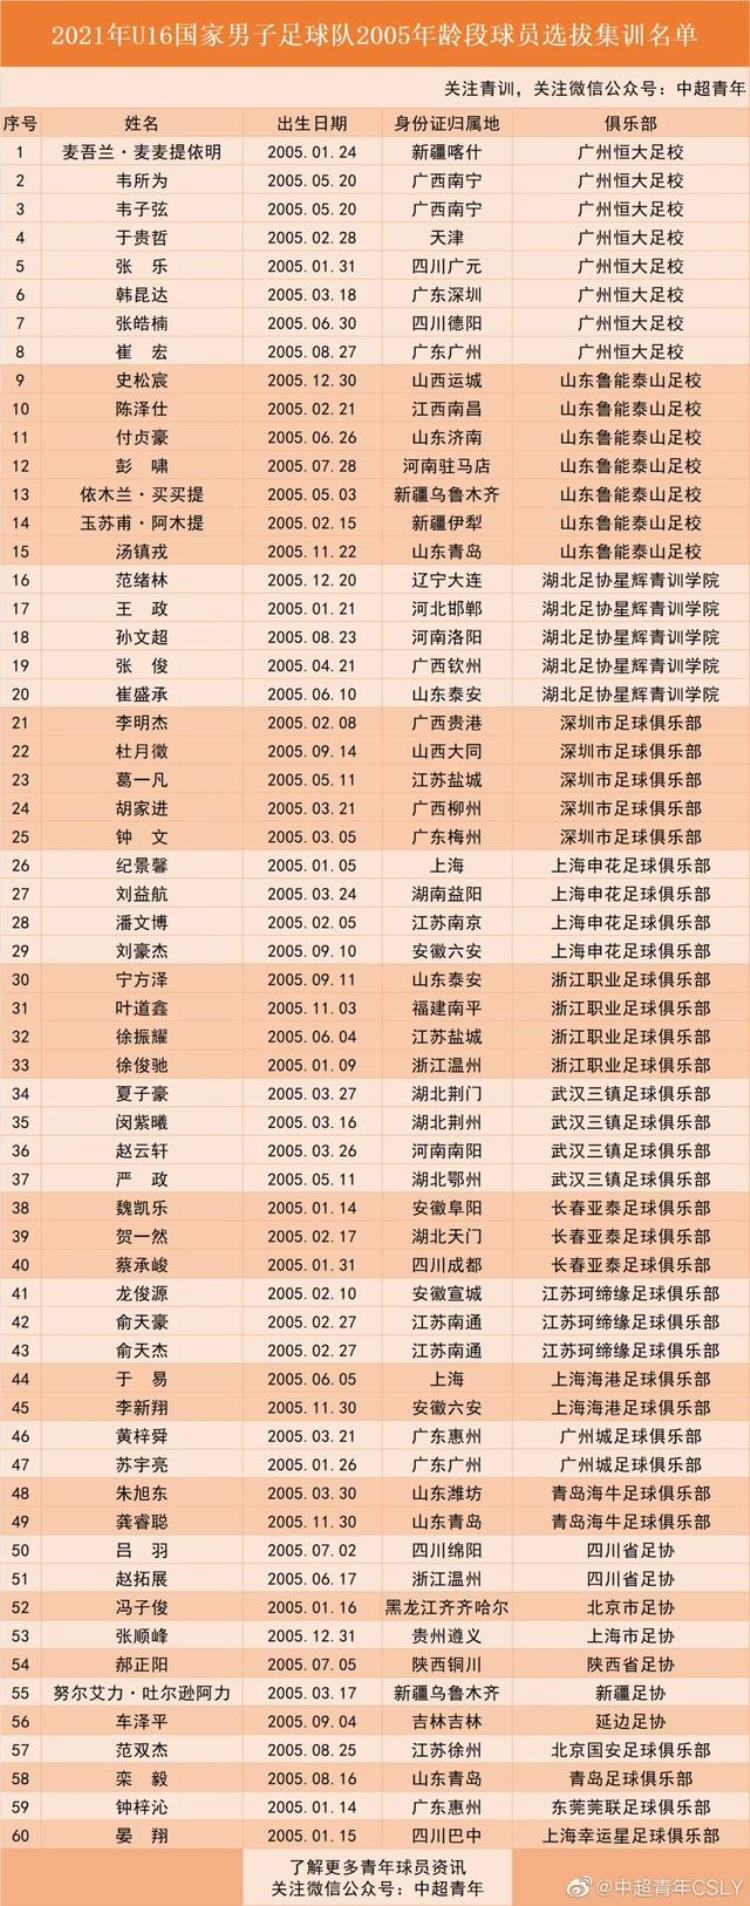 U16国少佛山集结富力球员苏宇亮黄梓舜在列